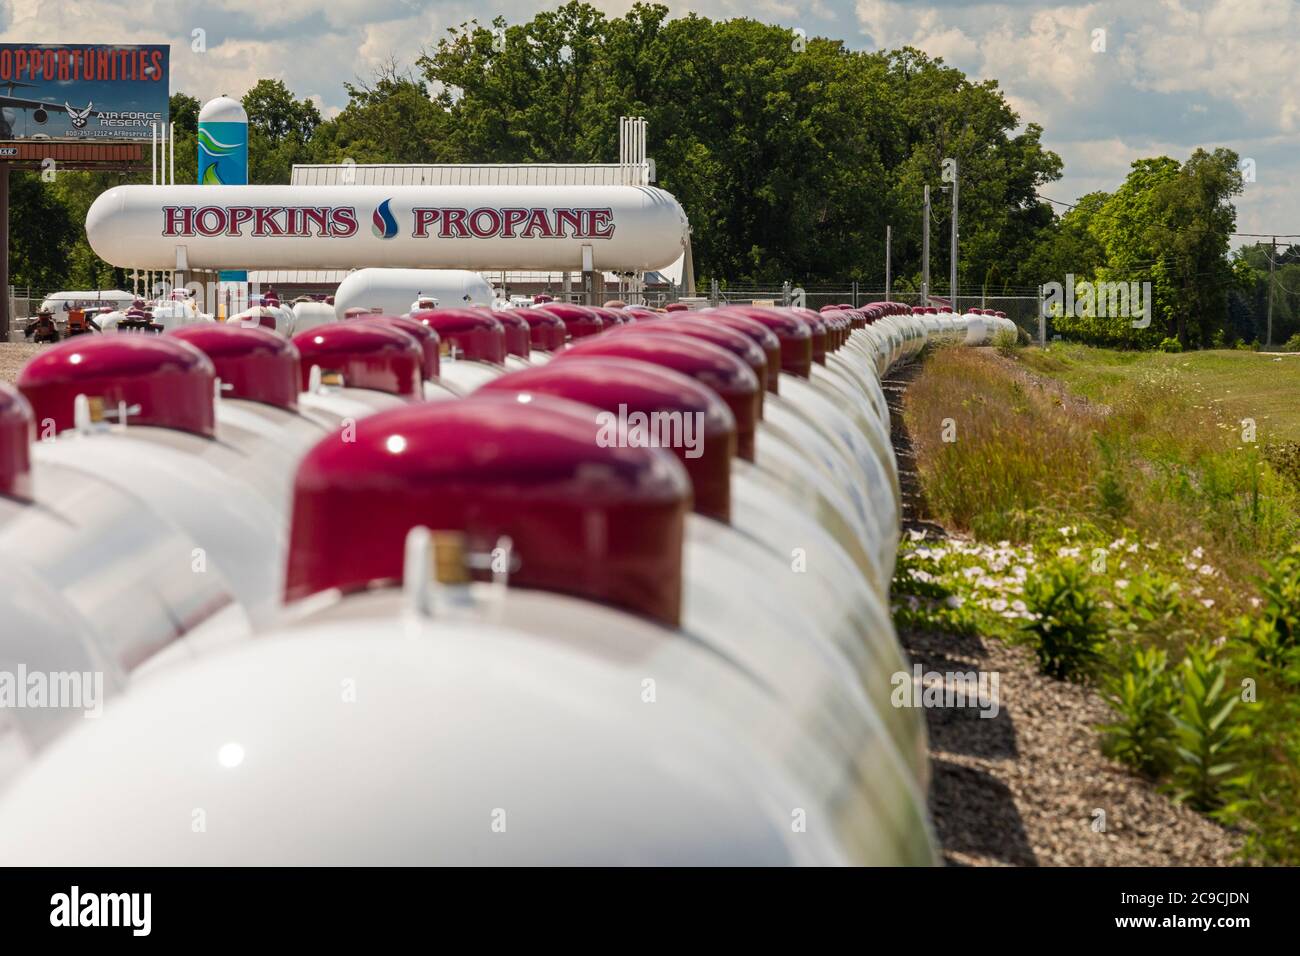 Shelbyville, Michigan - réservoirs propane entreposés chez un fournisseur de propane dans les régions rurales du Michigan. Banque D'Images